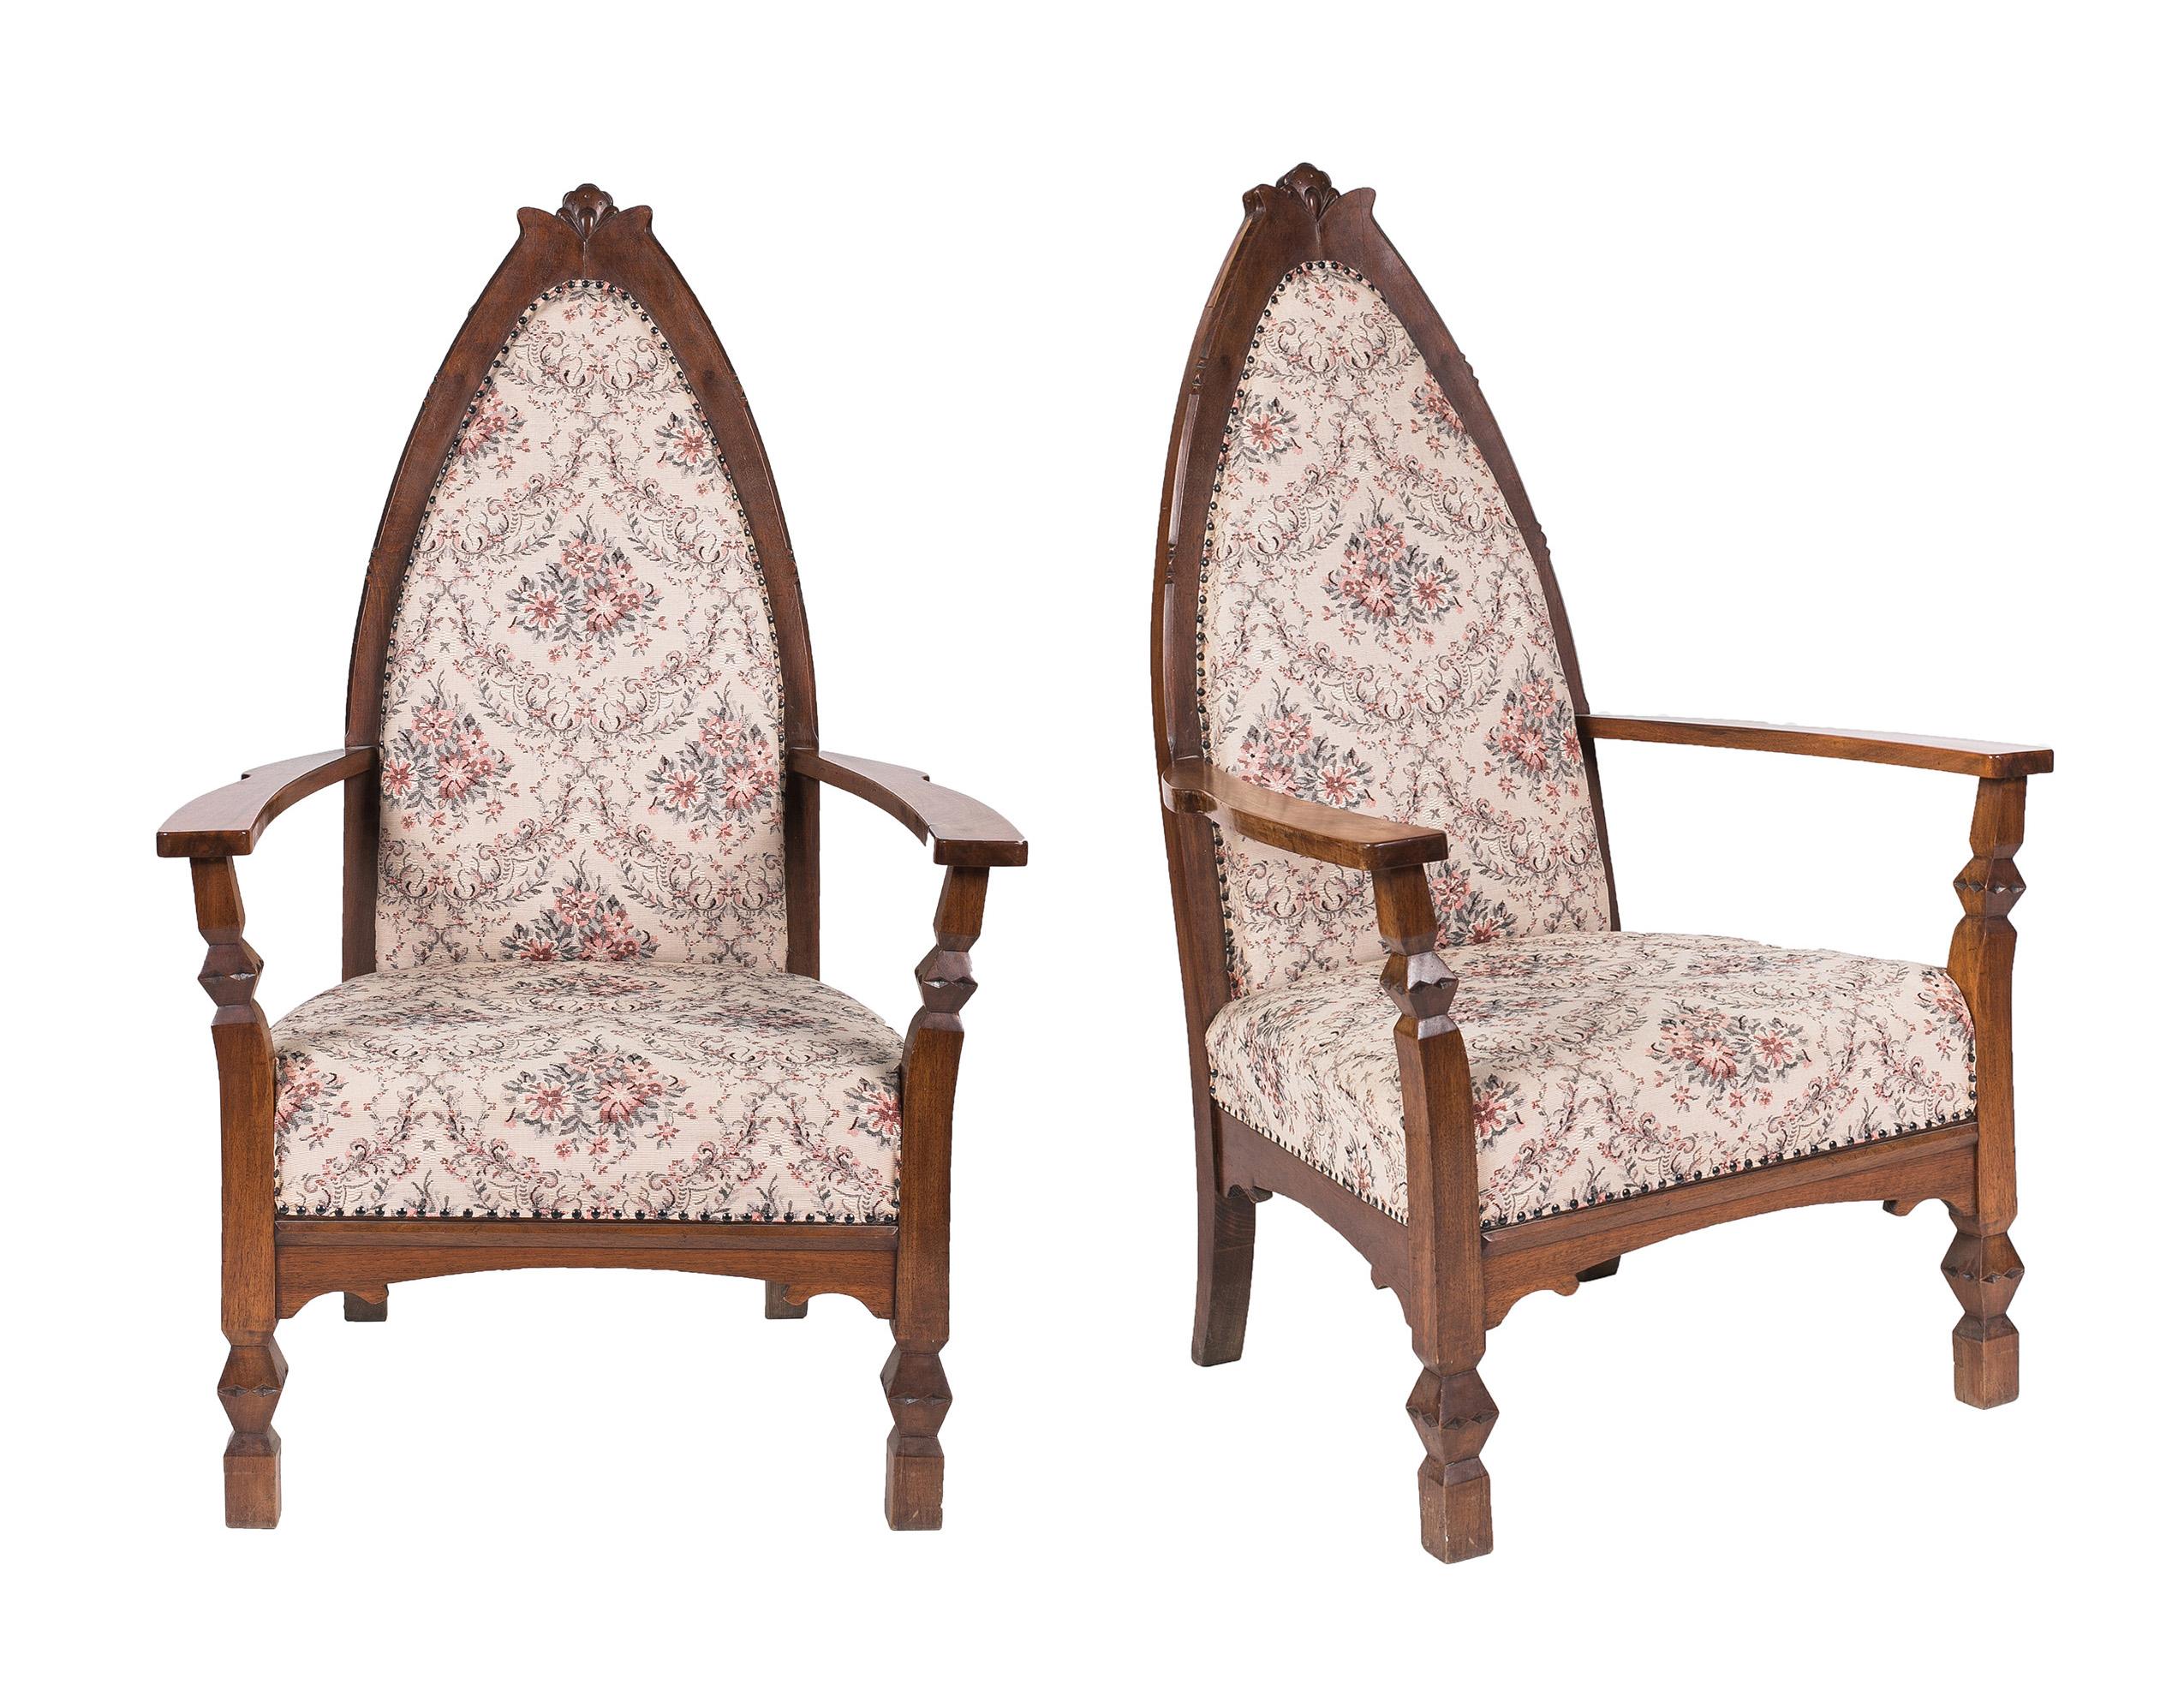 Ensemble de sièges Art nouveau conçu par l'architecte et designer de meubles hongrois Ede Toroczkai Wigand. 
L'ensemble de quatre pièces se compose de deux paires de fauteuils identiques et séparés, aux dimensions suivantes (d/w/h/sh) :
2